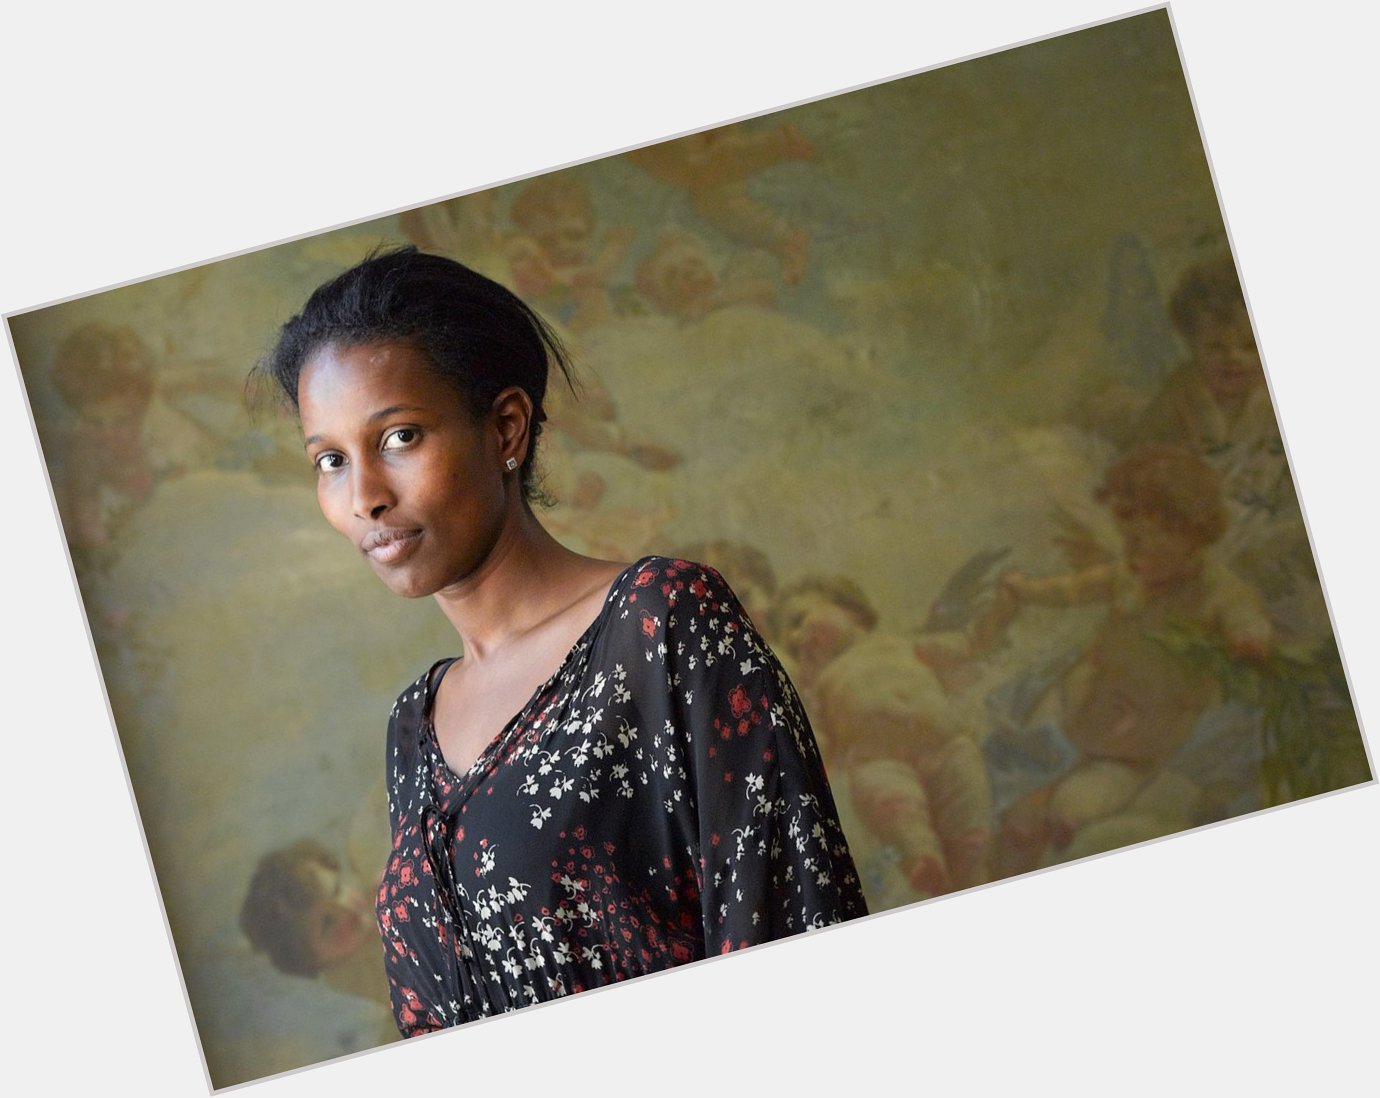 November 13 Happy Birthday Ayaan Hirsi Ali! (Somali writer born 1969)  